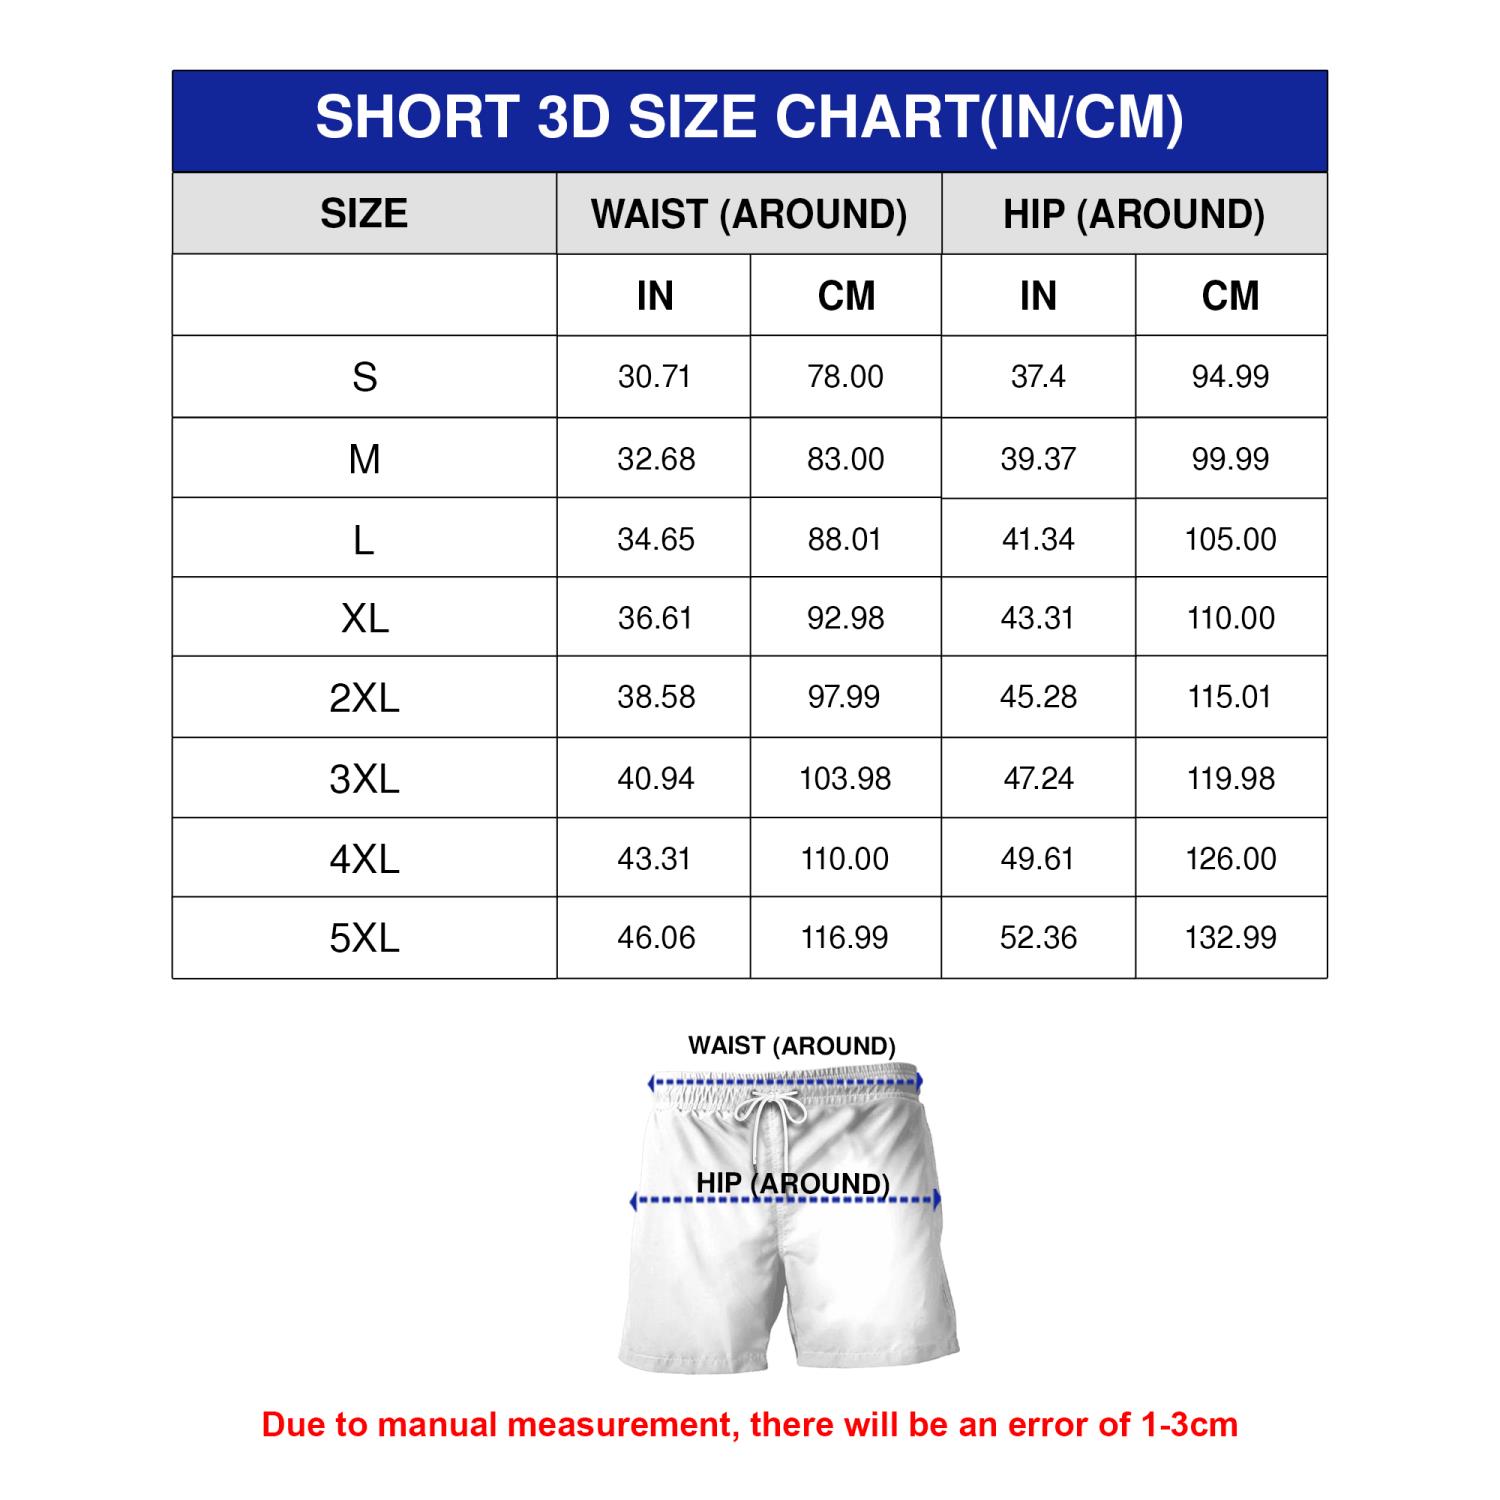 Short 3D Size Chart